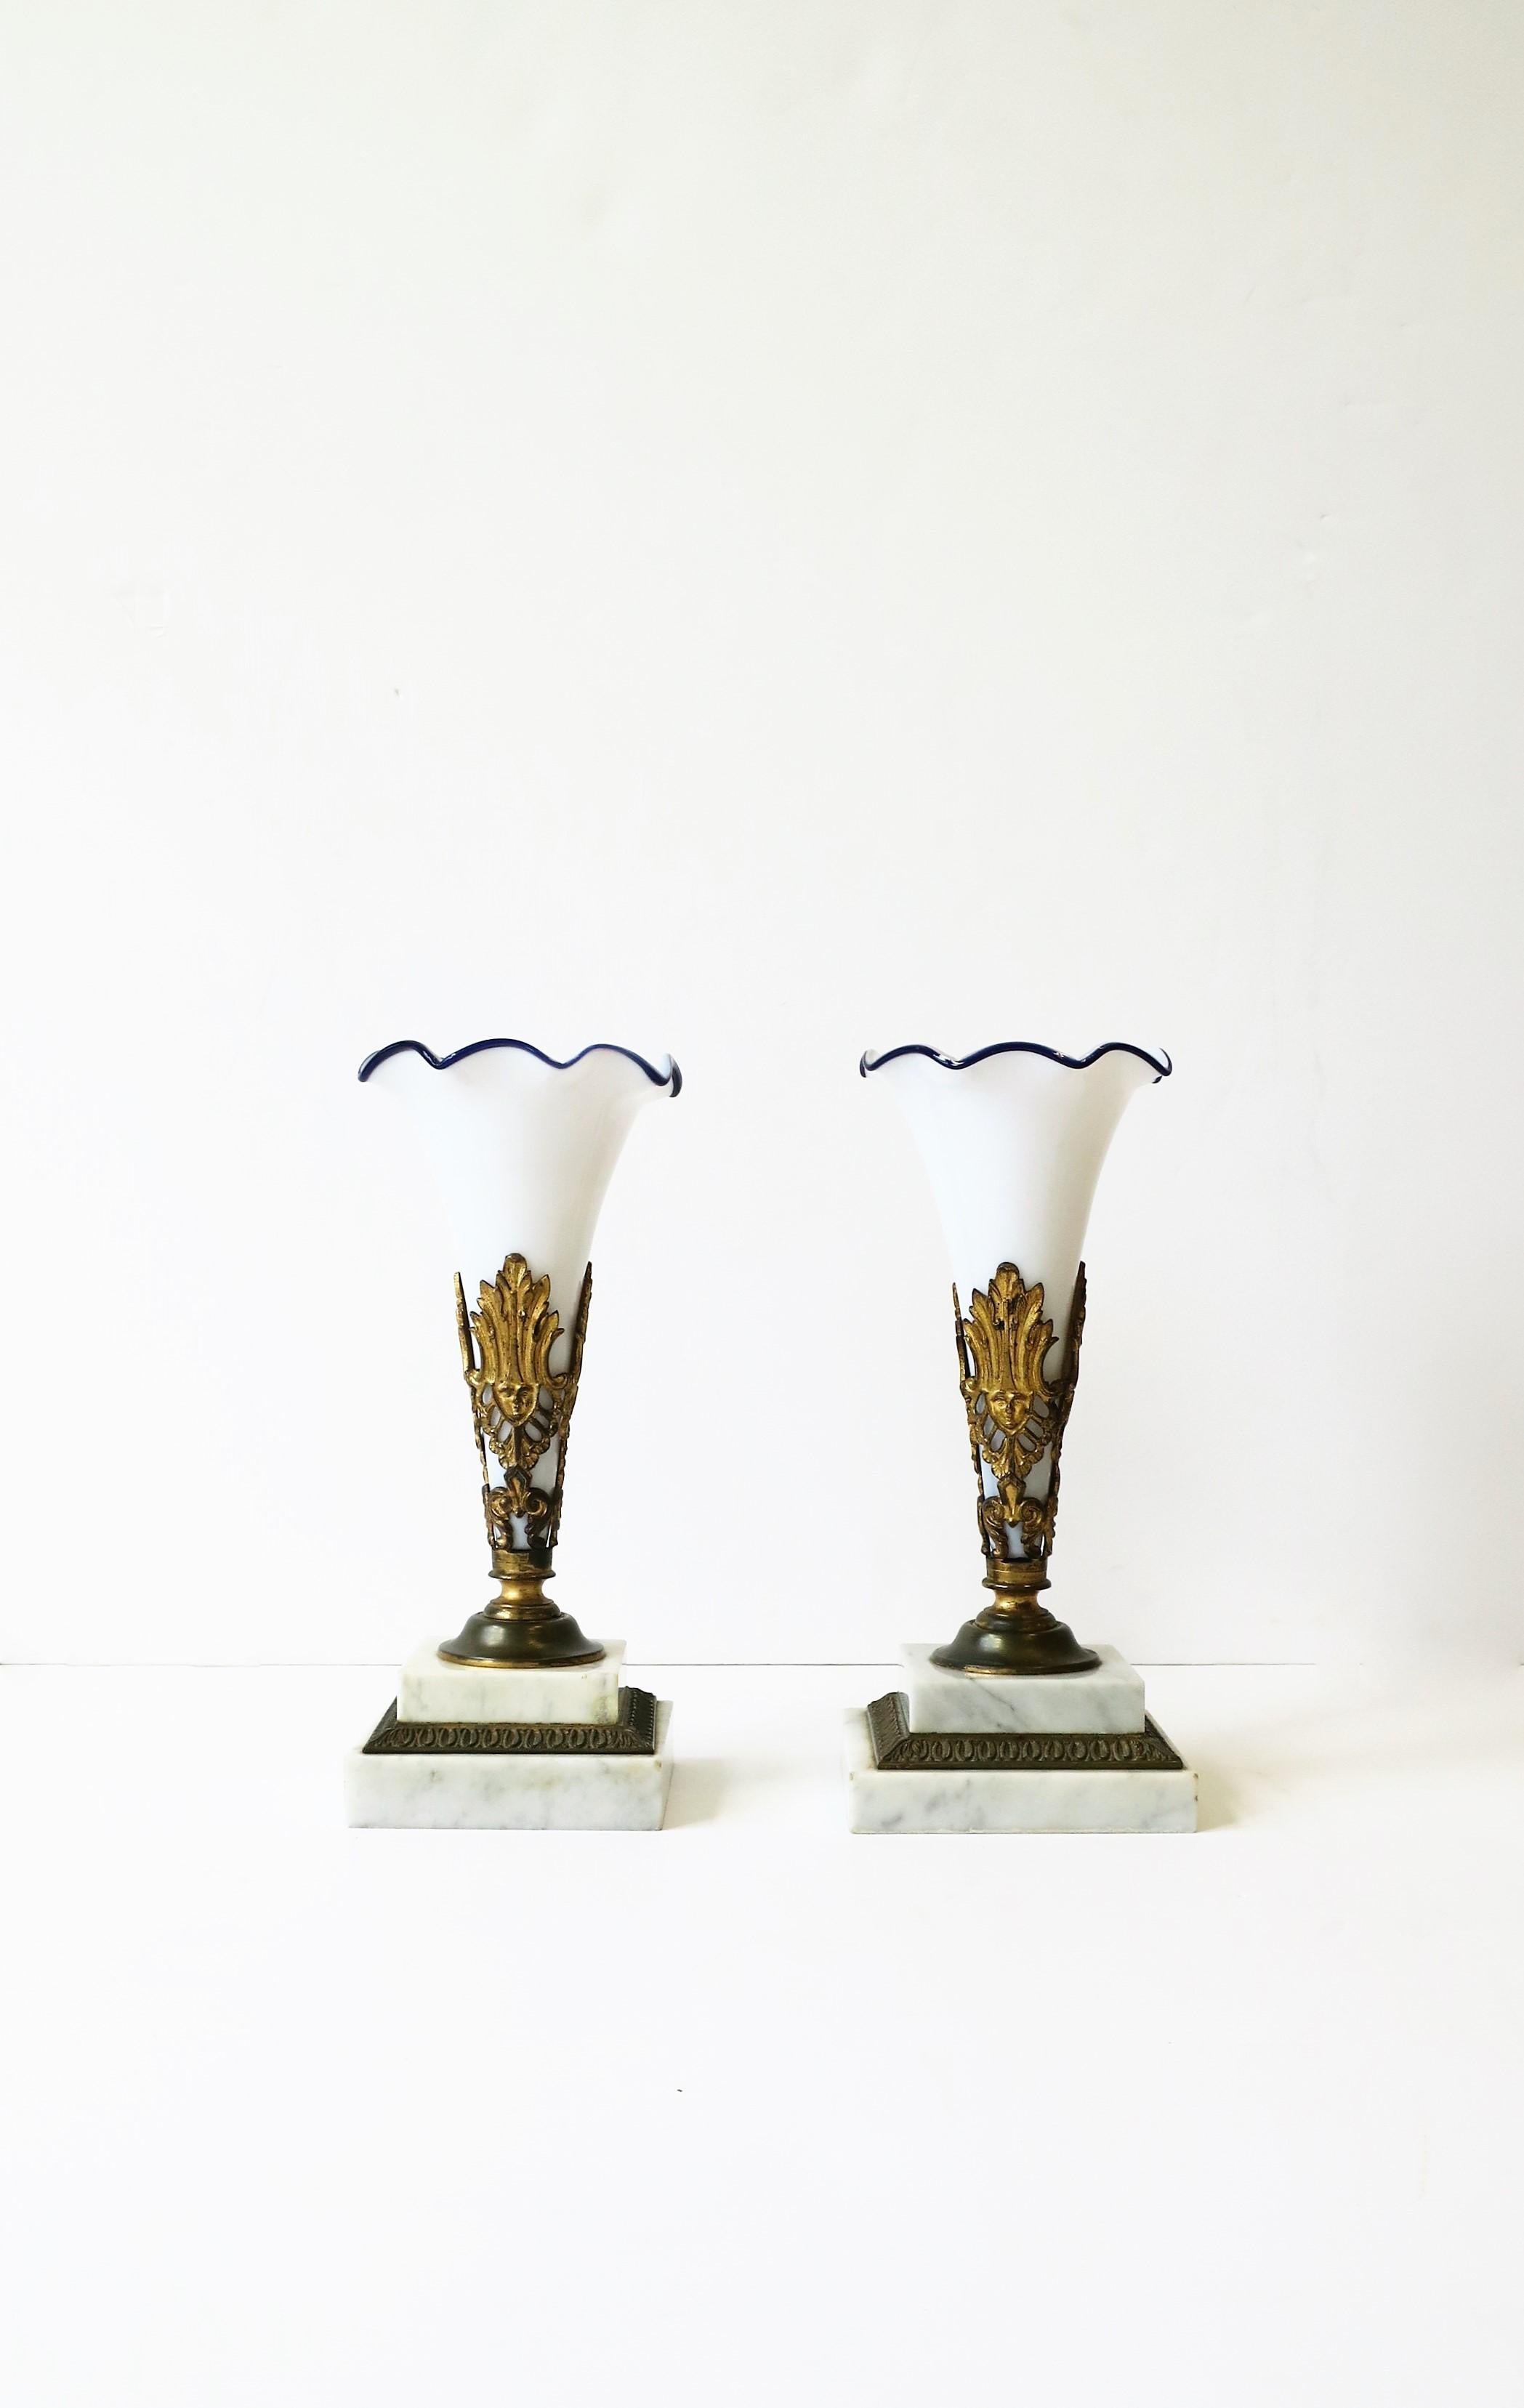 Magnifique paire de vases en verre d'art blanc et bleu sur des bases en bronze/laiton doré et marbre blanc, vers le début du 20e siècle, France. Les vases en verre d'art blanc sont soufflés à la main. Le bord présente un motif de vagues entouré de